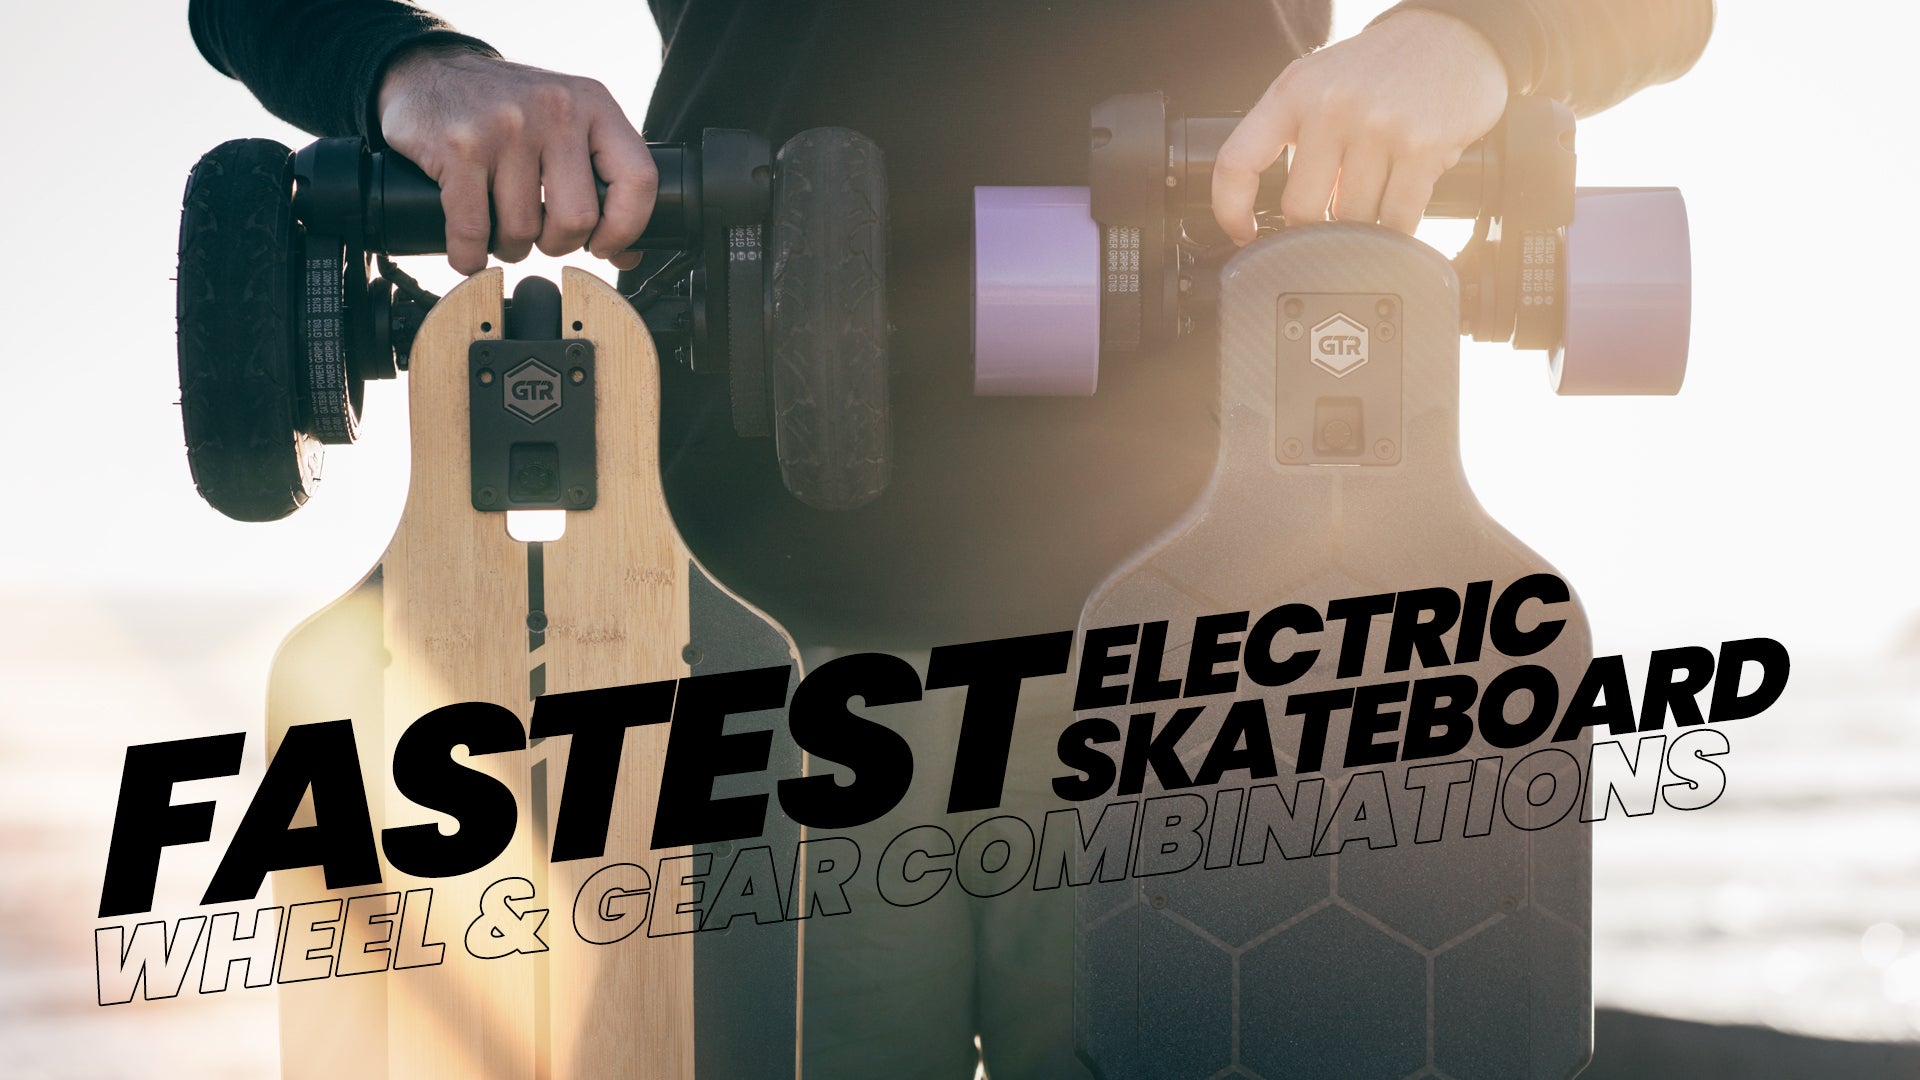 Fastest Electric Skateboard: Wheel & Gear combinations